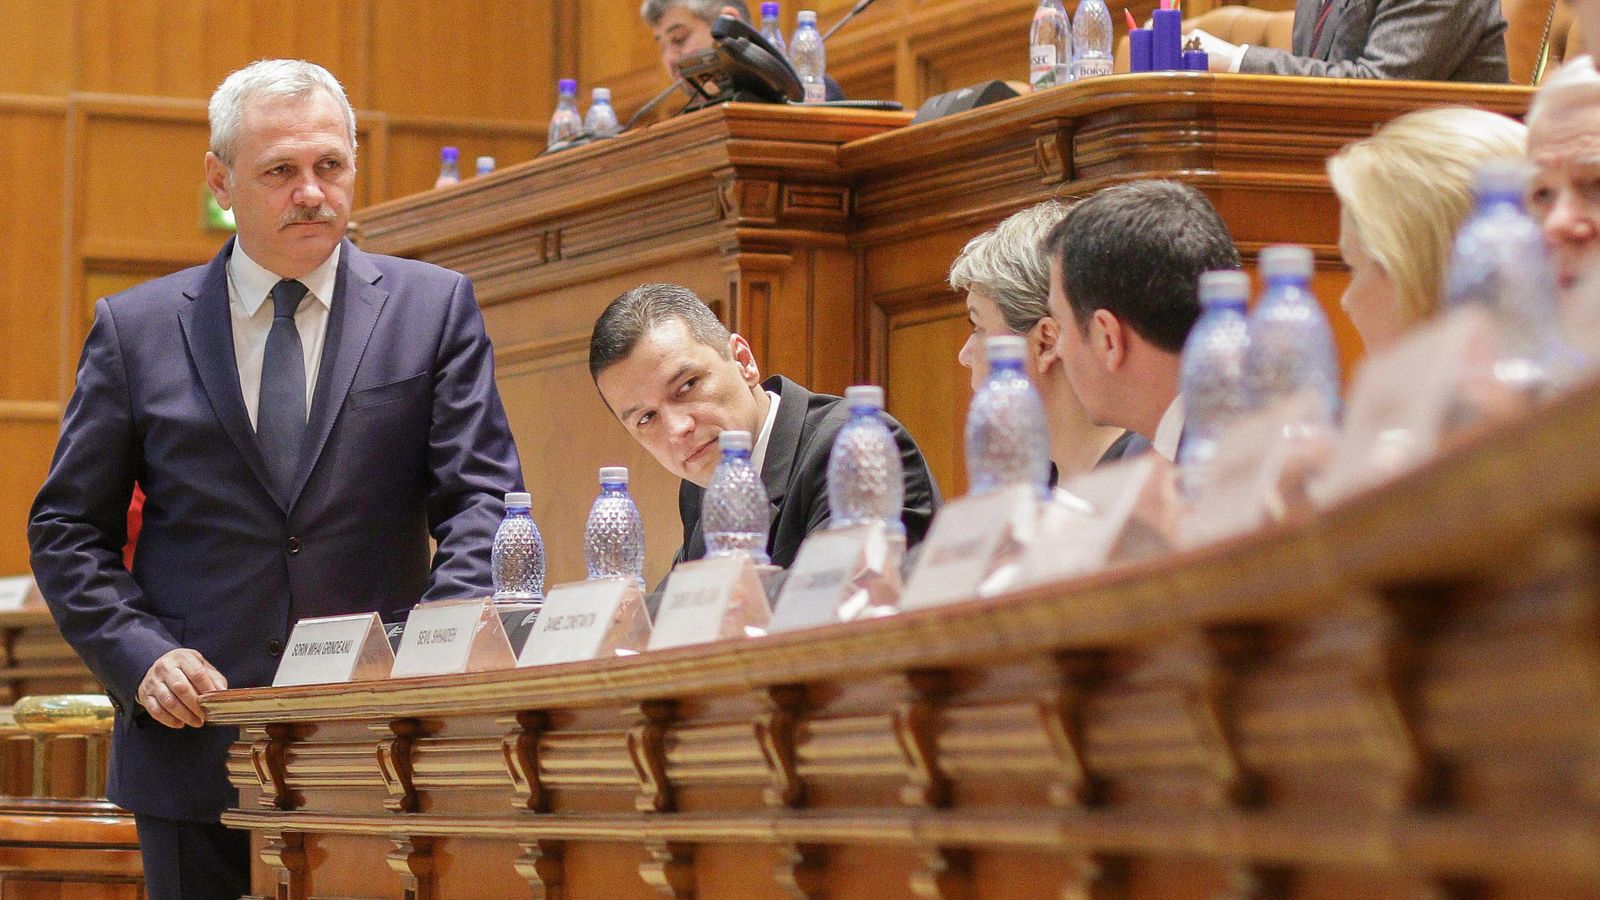 Foto: Liviu Dragnea, lídeer del PSD, junto a miembros de su partido en el Parlamento en Bucarest, el pasado 4 de enero (Reuters)